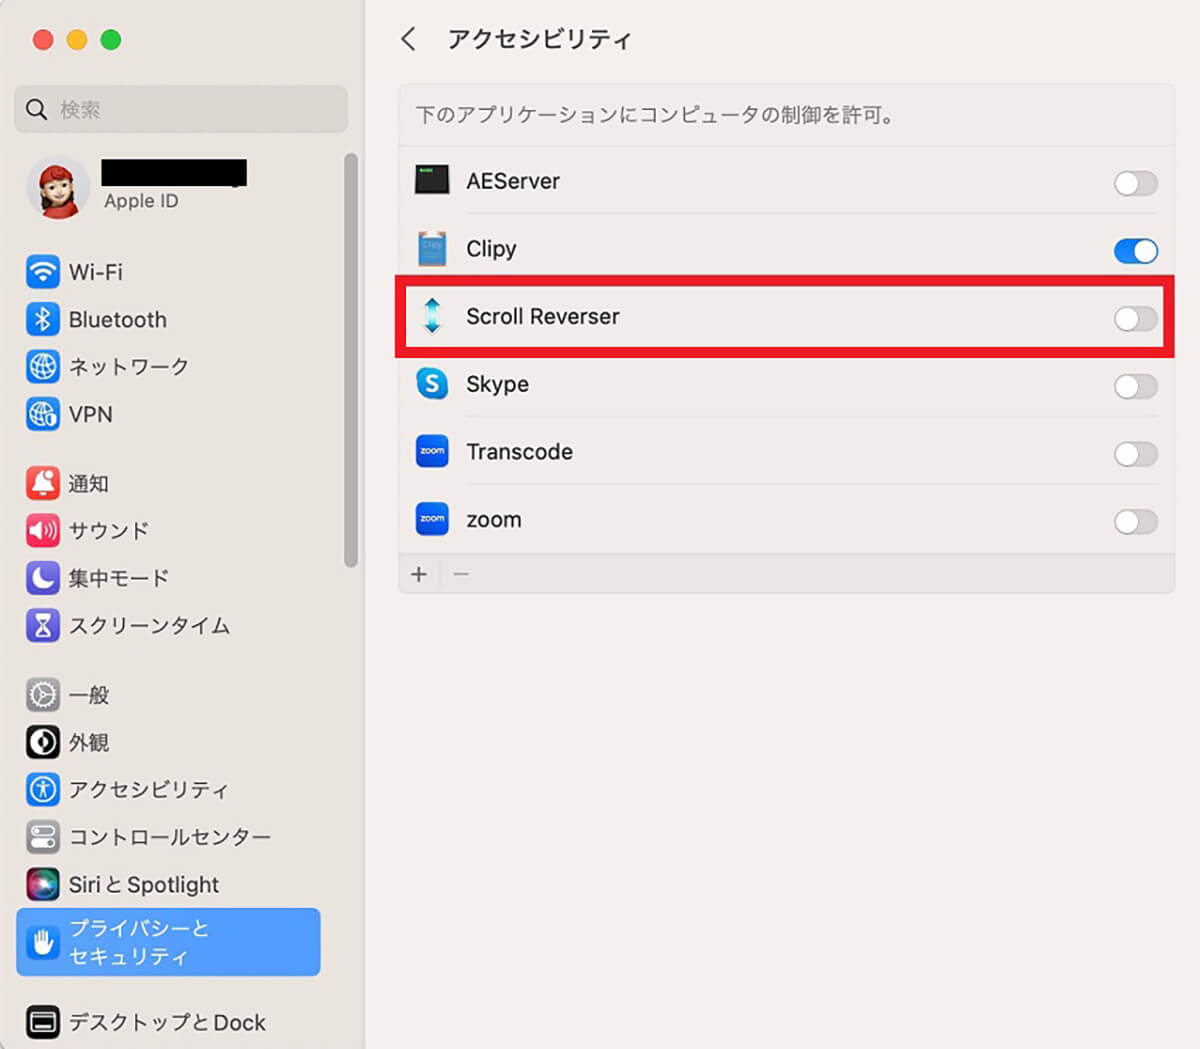 【方法②】Scroll Reverserアプリを使用、Macのアプリケーションフォルダに移動して起動し設定7